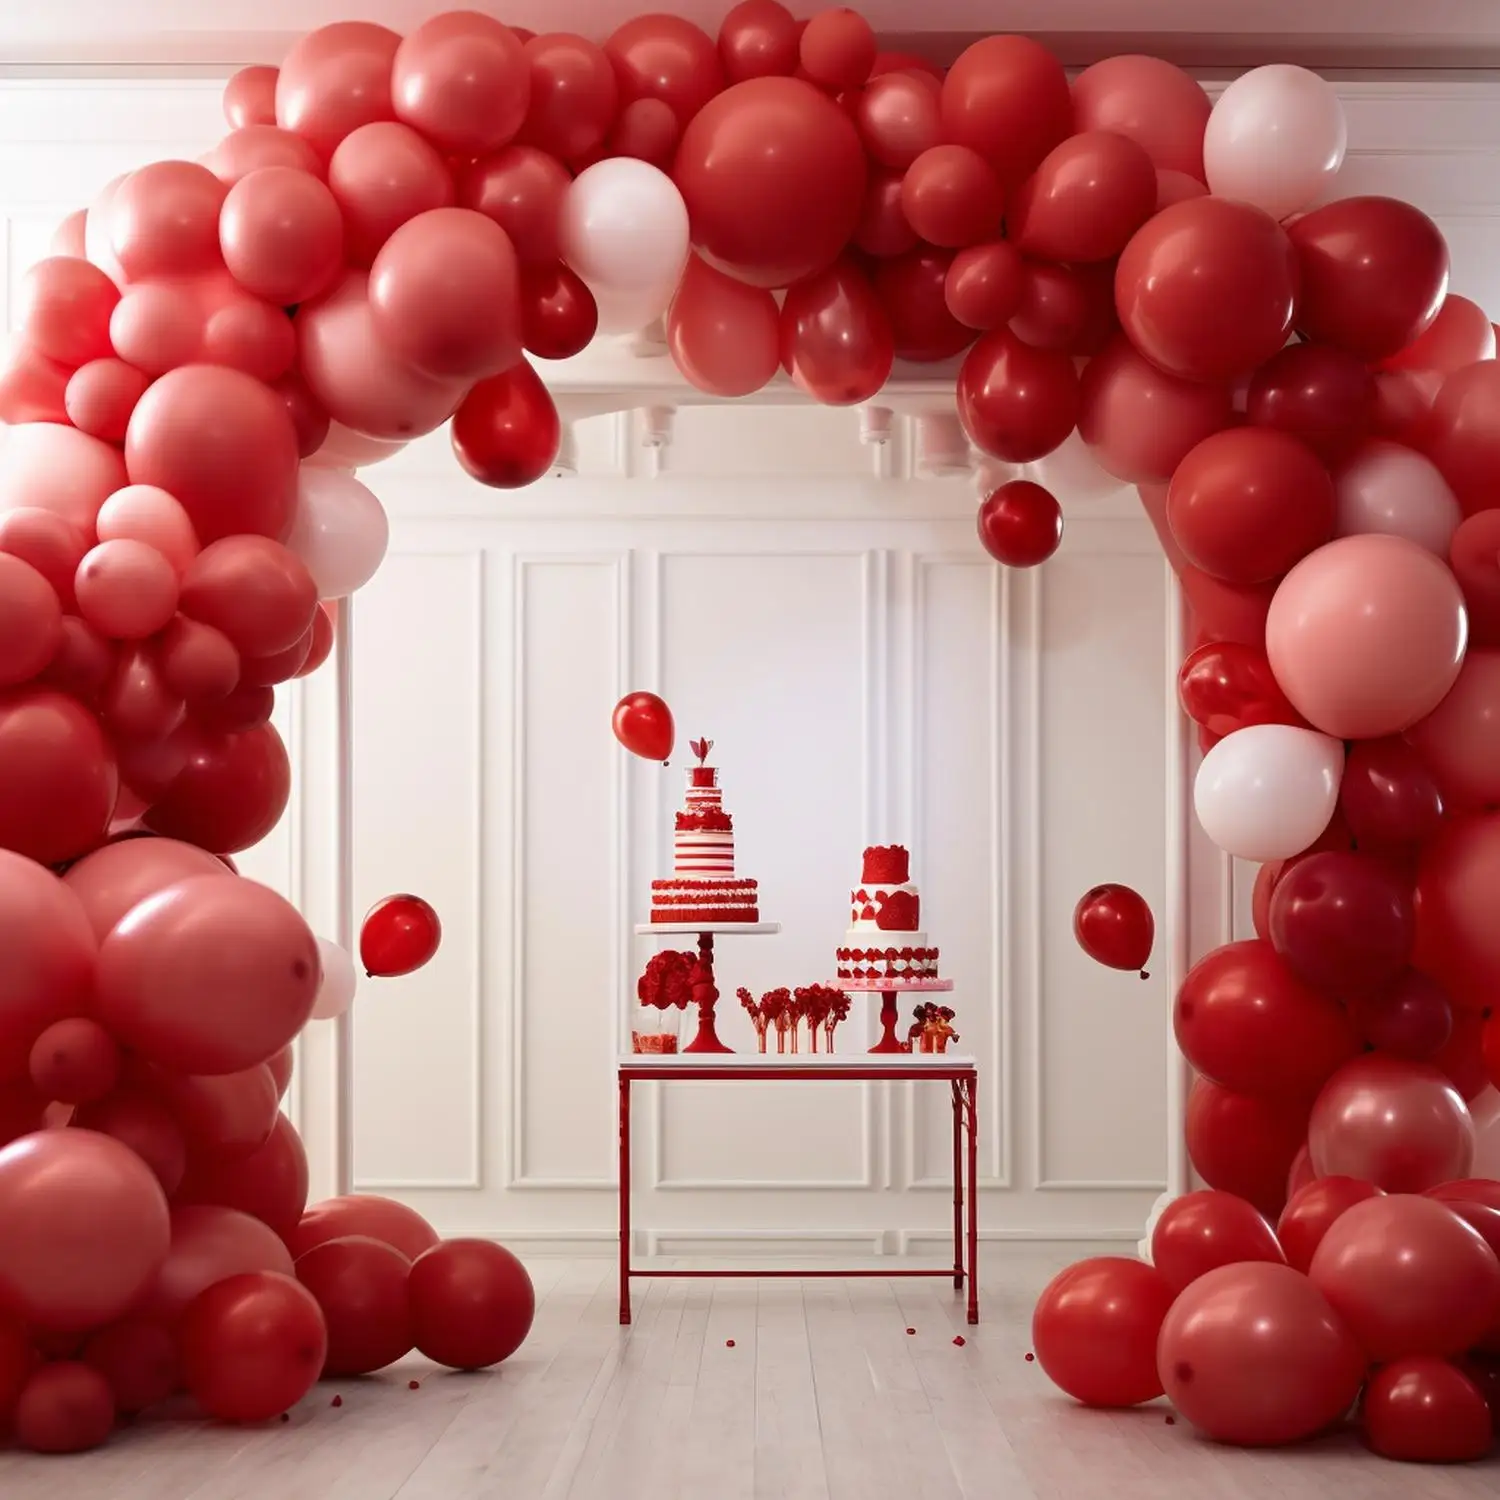 150 шт./компл. 5-дюймовые красные латексные воздушные шары на день рождения для вечеринки по случаю дня рождения, латексные воздушные шары для вечеринки, латексные воздушные шары для вечеринки